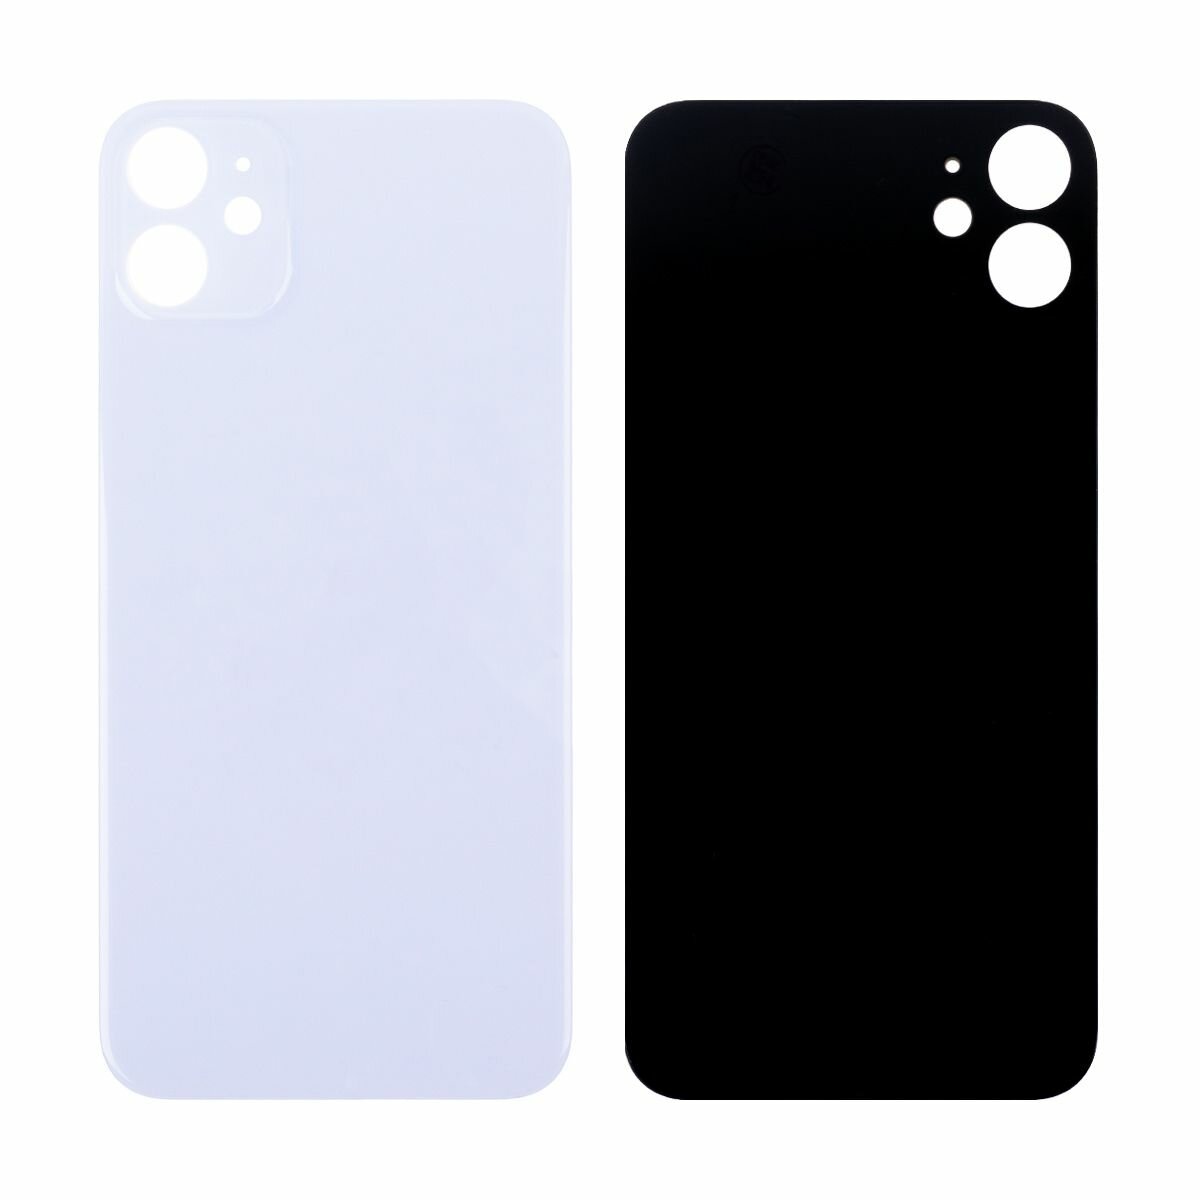 Задняя крышка - iPhone 11, из стекла, цвет сиреневый, 1 шт